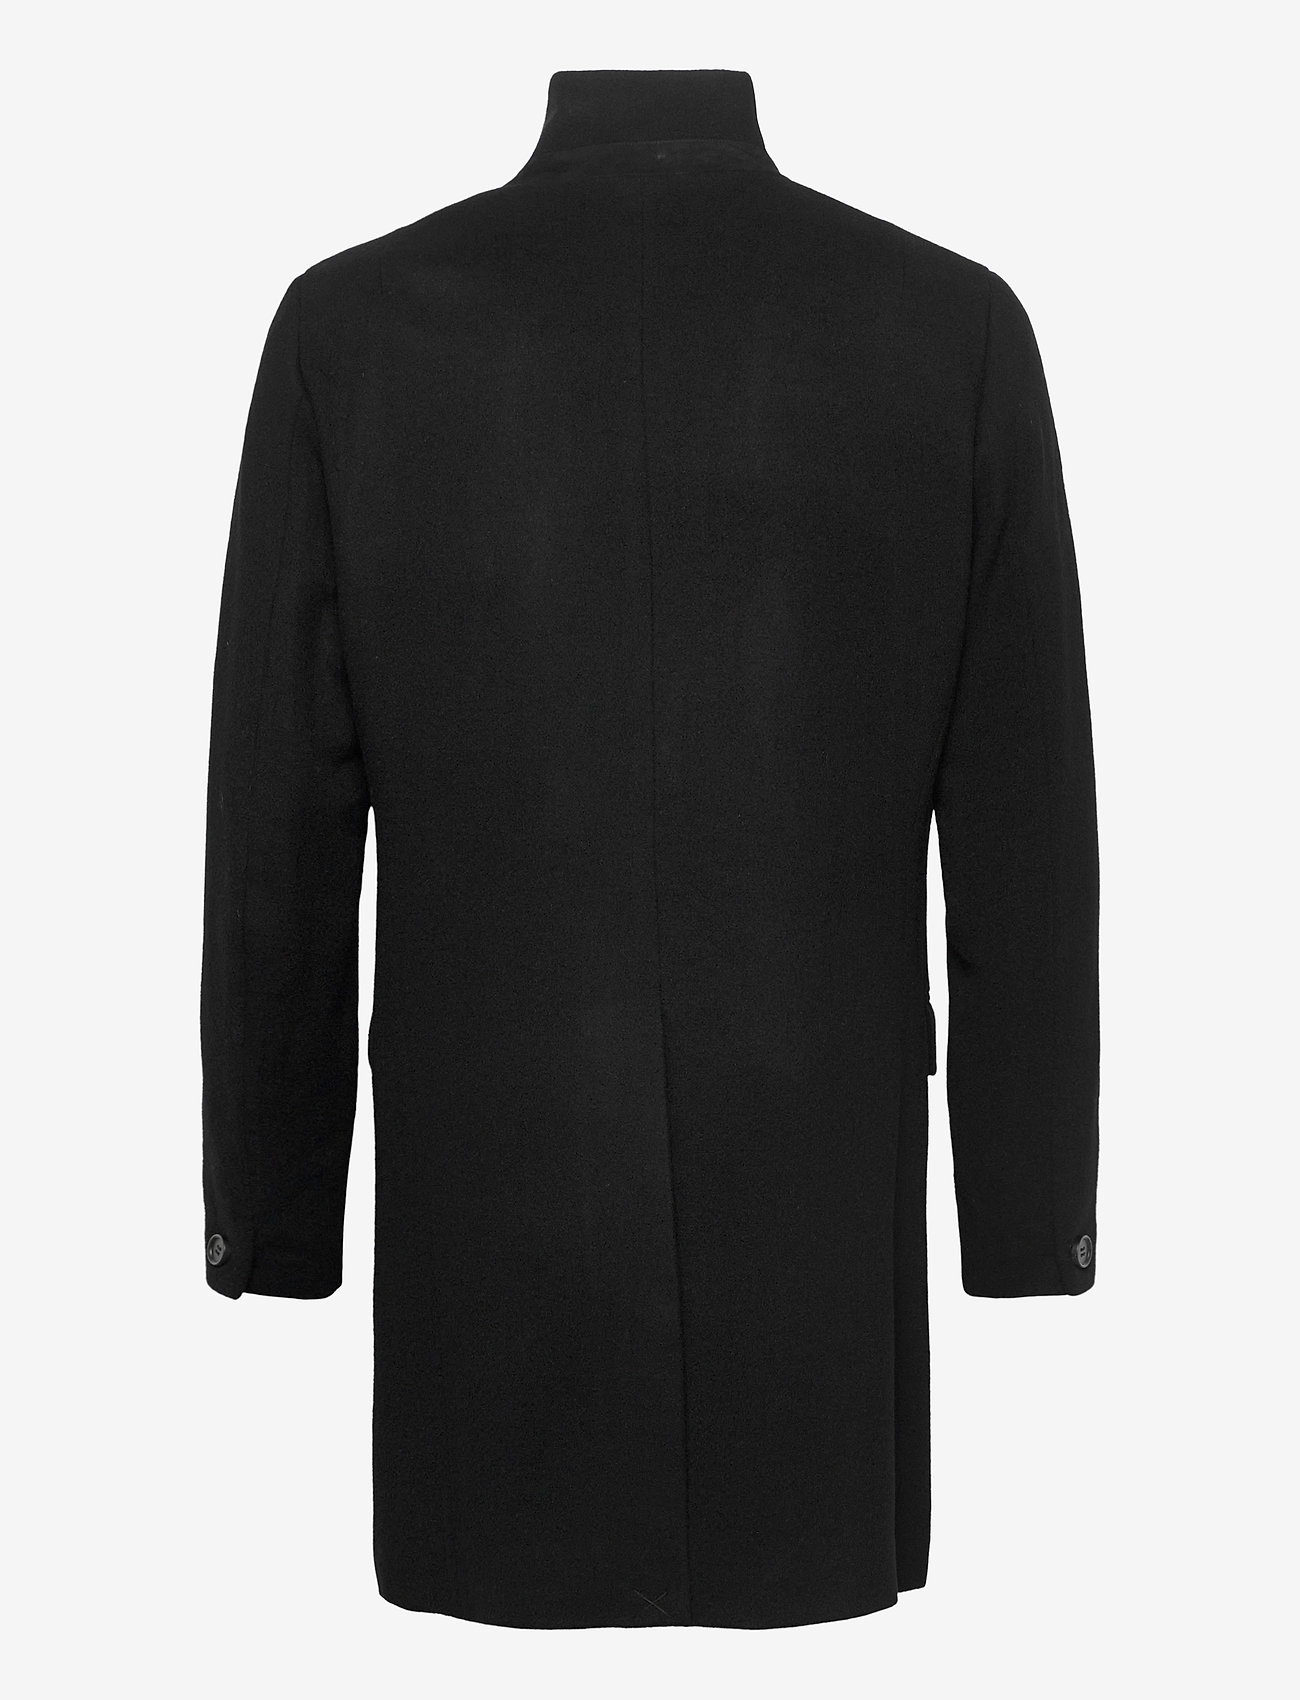 AllSaints - MANOR COAT - manteaux d'hiver - black - 3